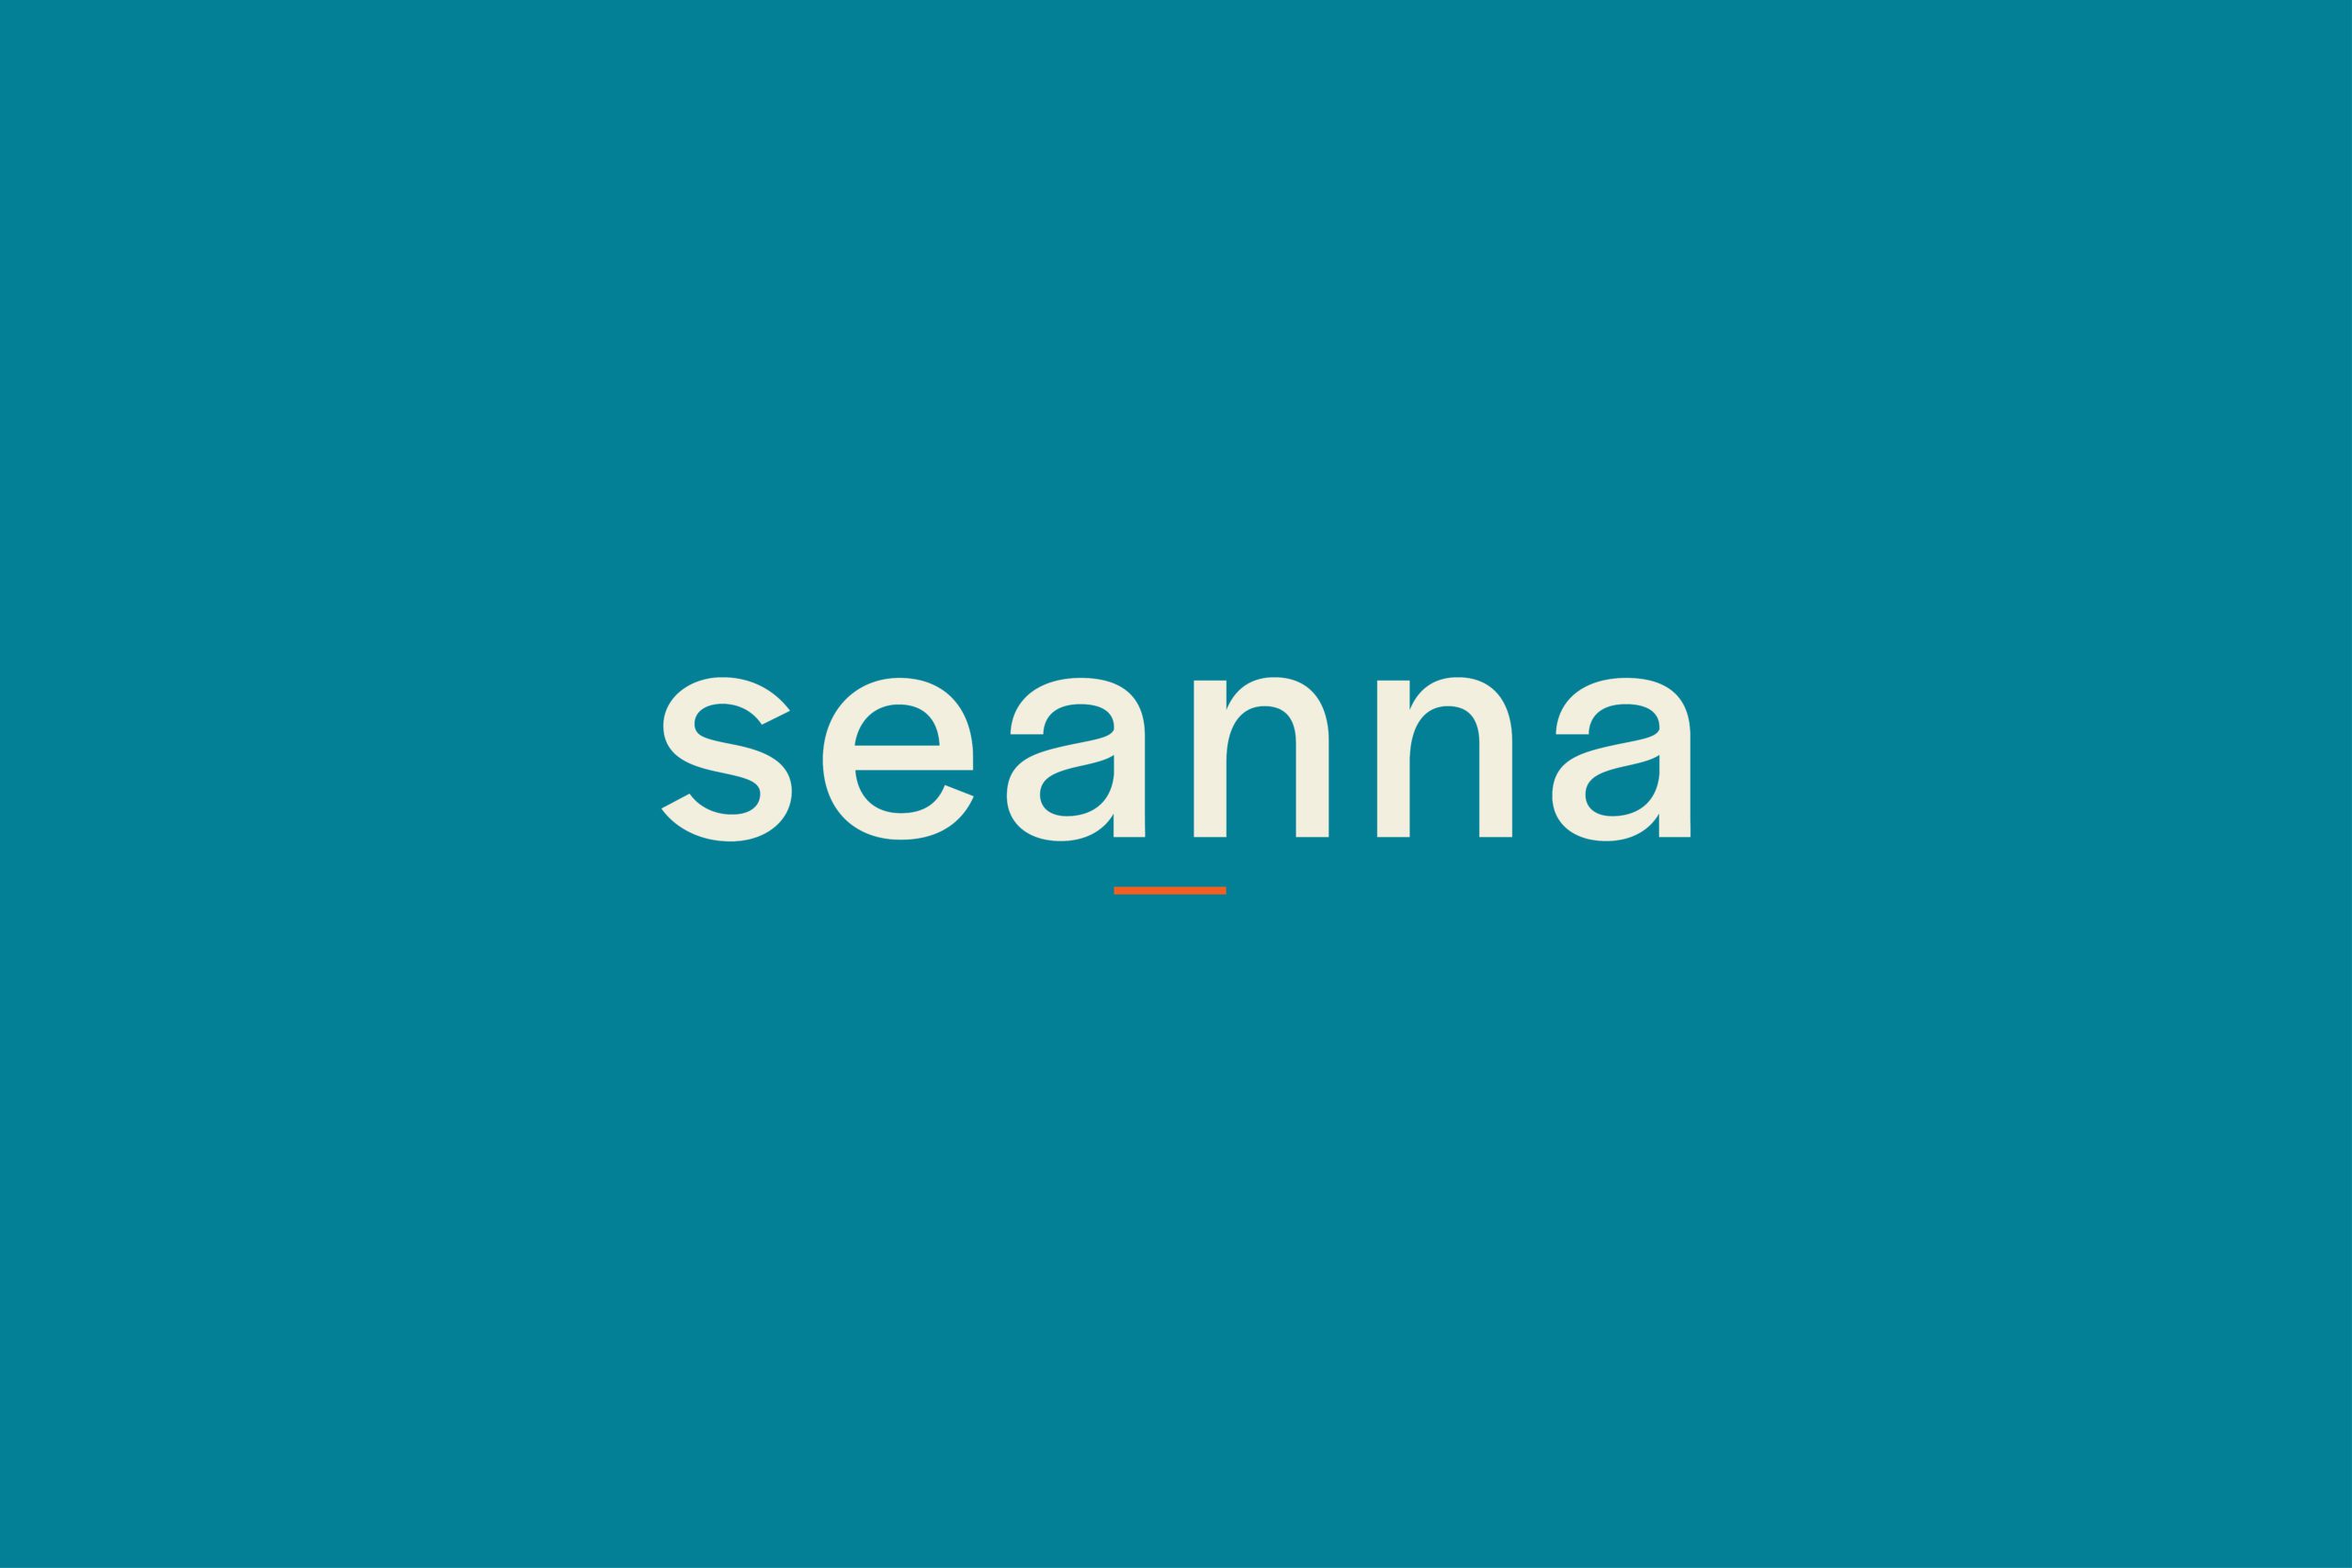 Seanna logo on blue